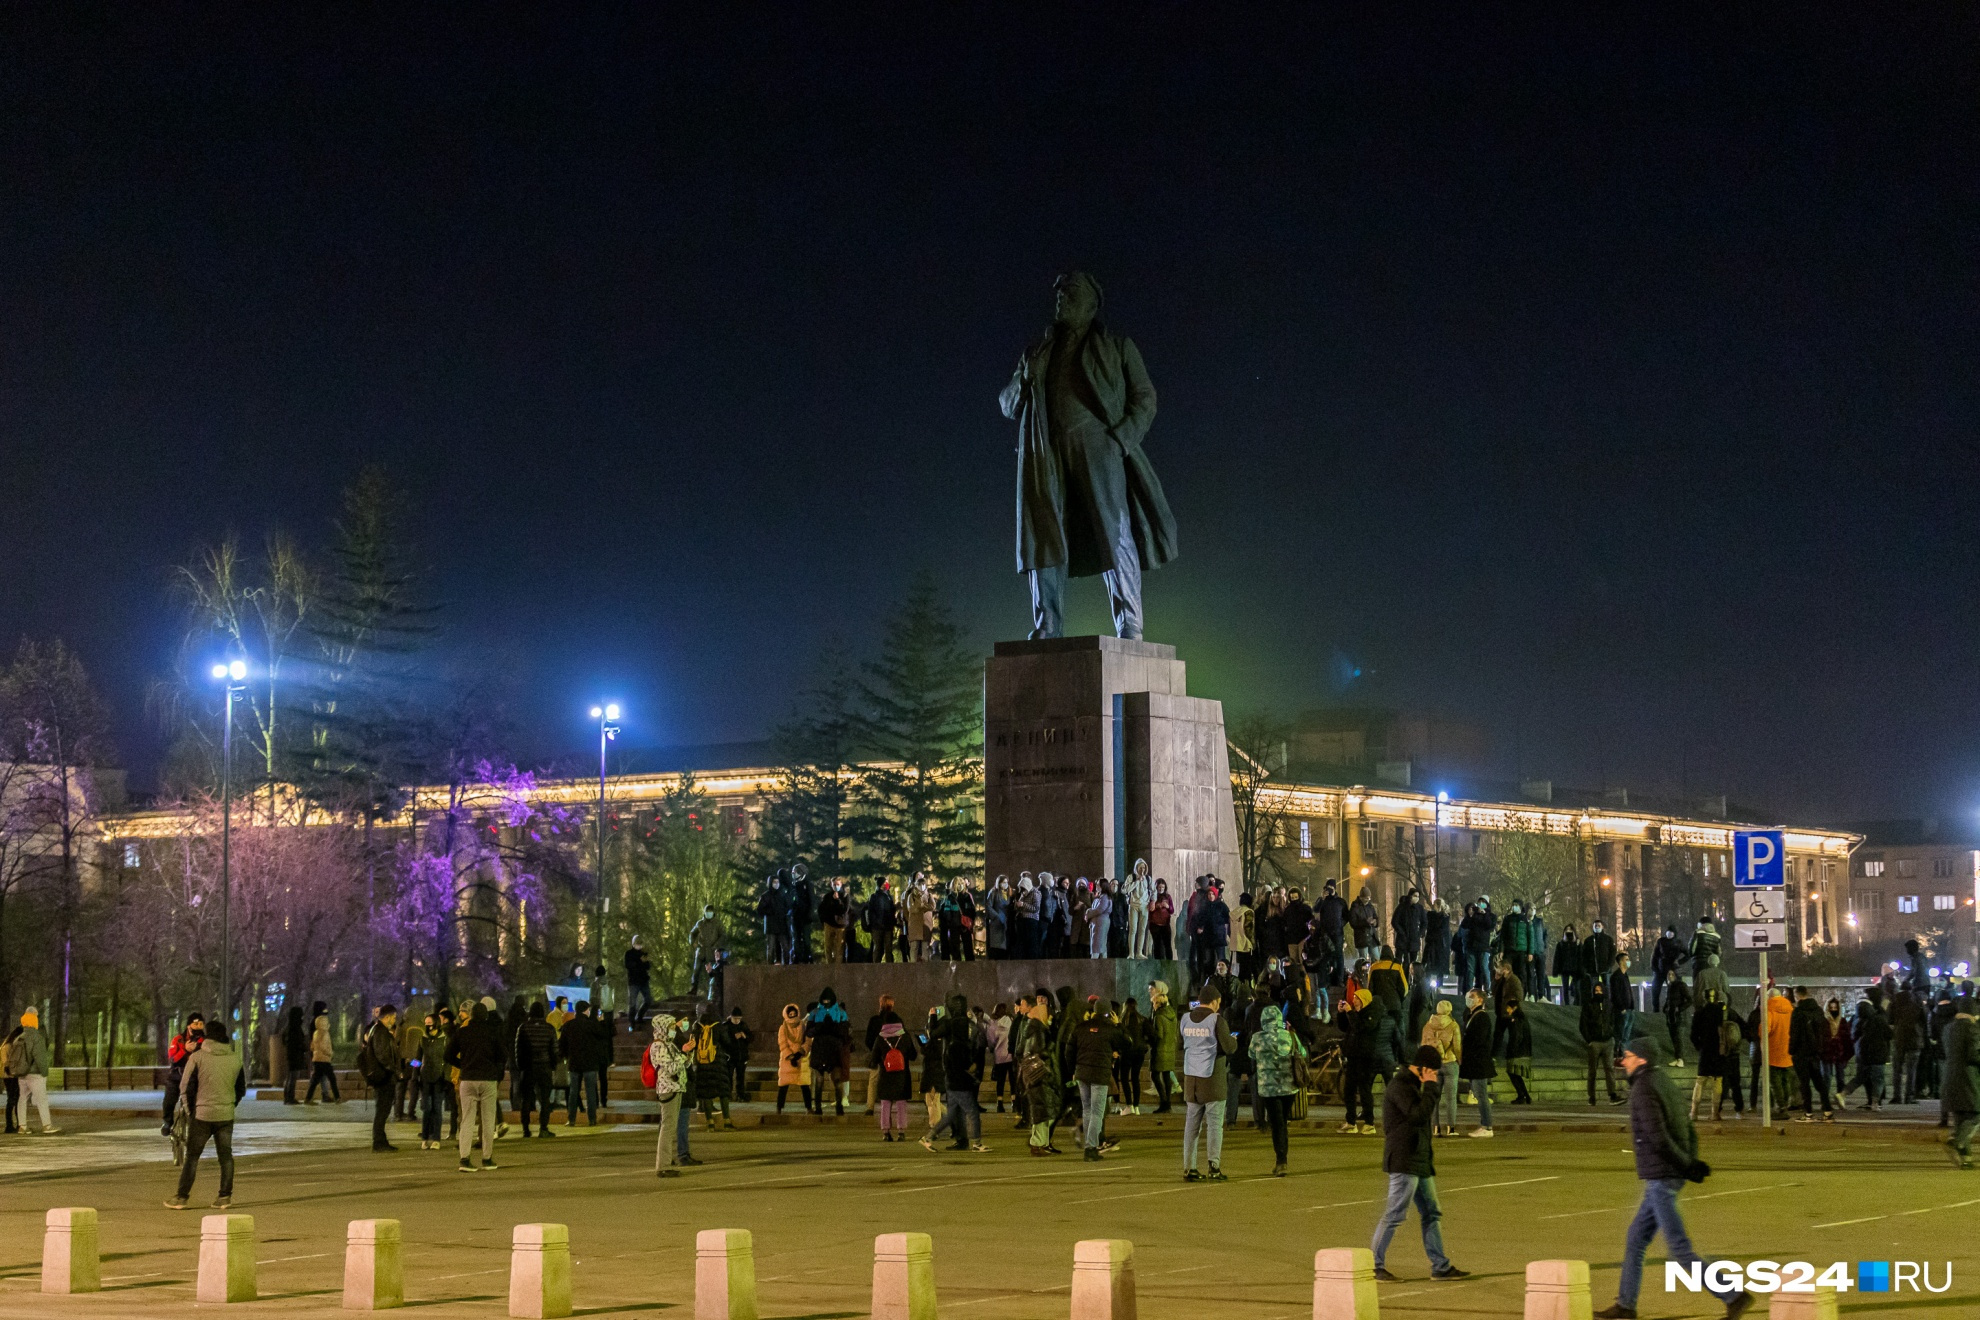 Акция в апреле прошла около памятника Ленину и обошлась без единого задержания. Но это не значит, что штрафов не будет